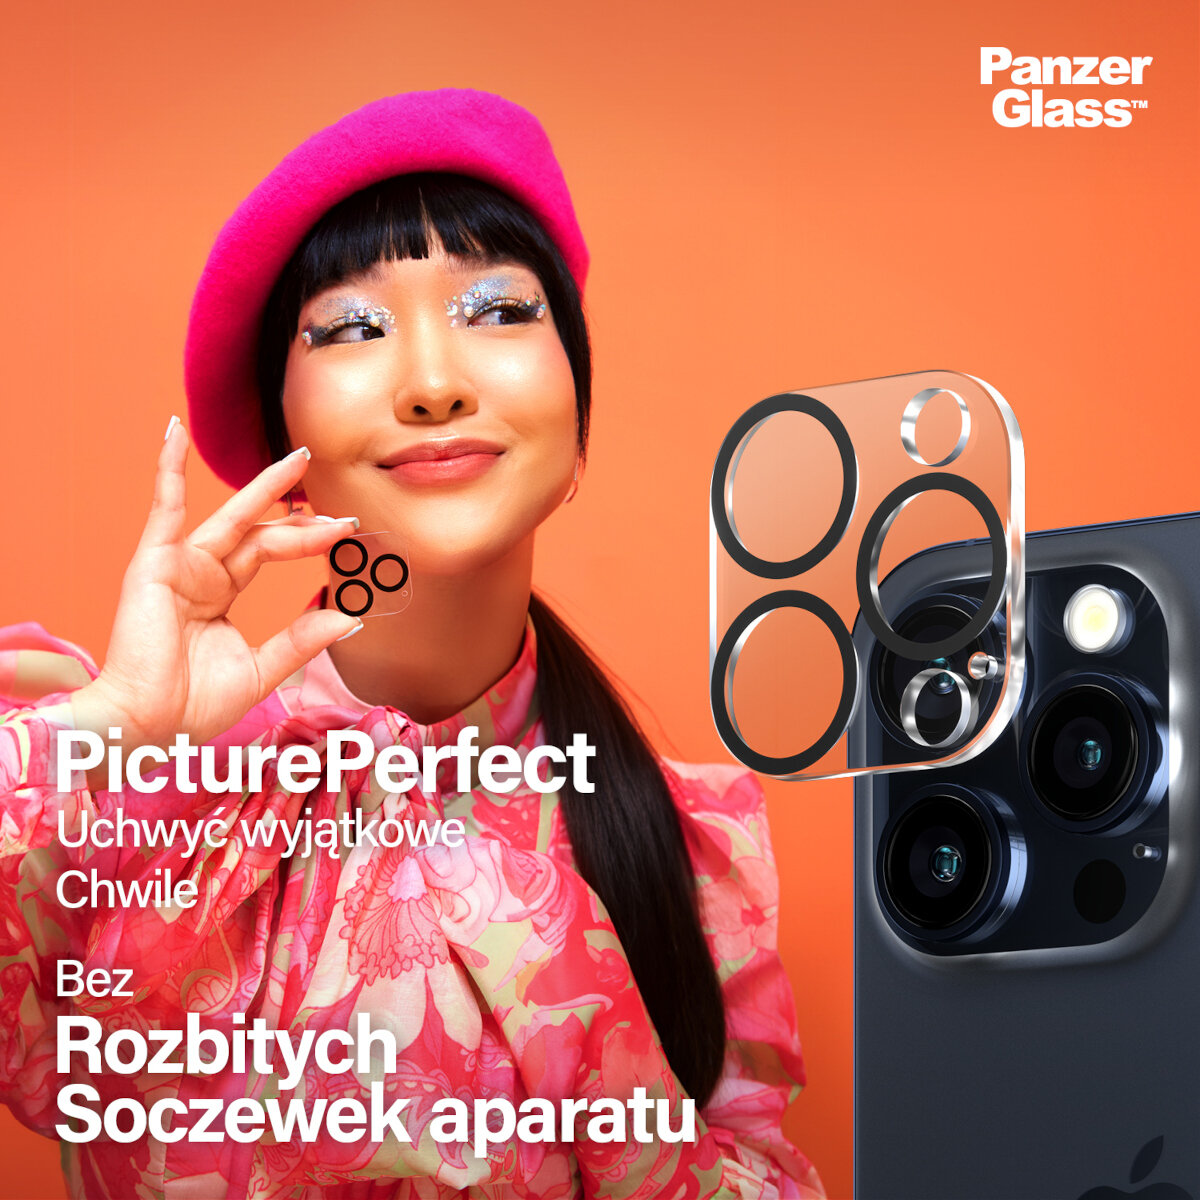 Szkło ochronne na obiektyw PanzerGlass PicturePerfect iPhone 15 Pro/15 Pro Max czarne widoczne szkło trzymane w dłoni przez kobietę oraz szkło zbliżone do obiektywów telefonu